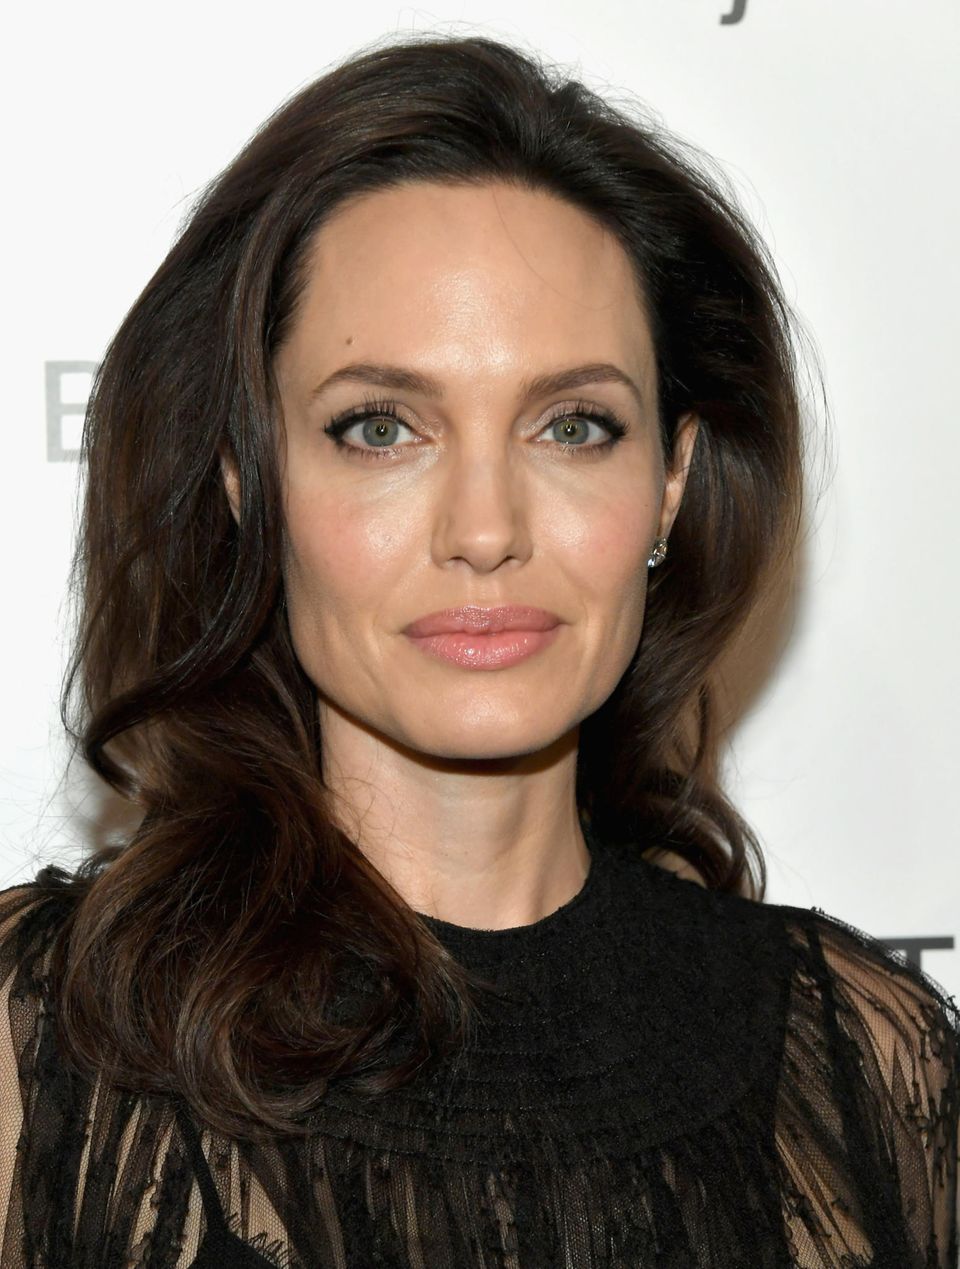 Frisuren, die jünger machen: Angelina Jolie mit Locken-Frisur